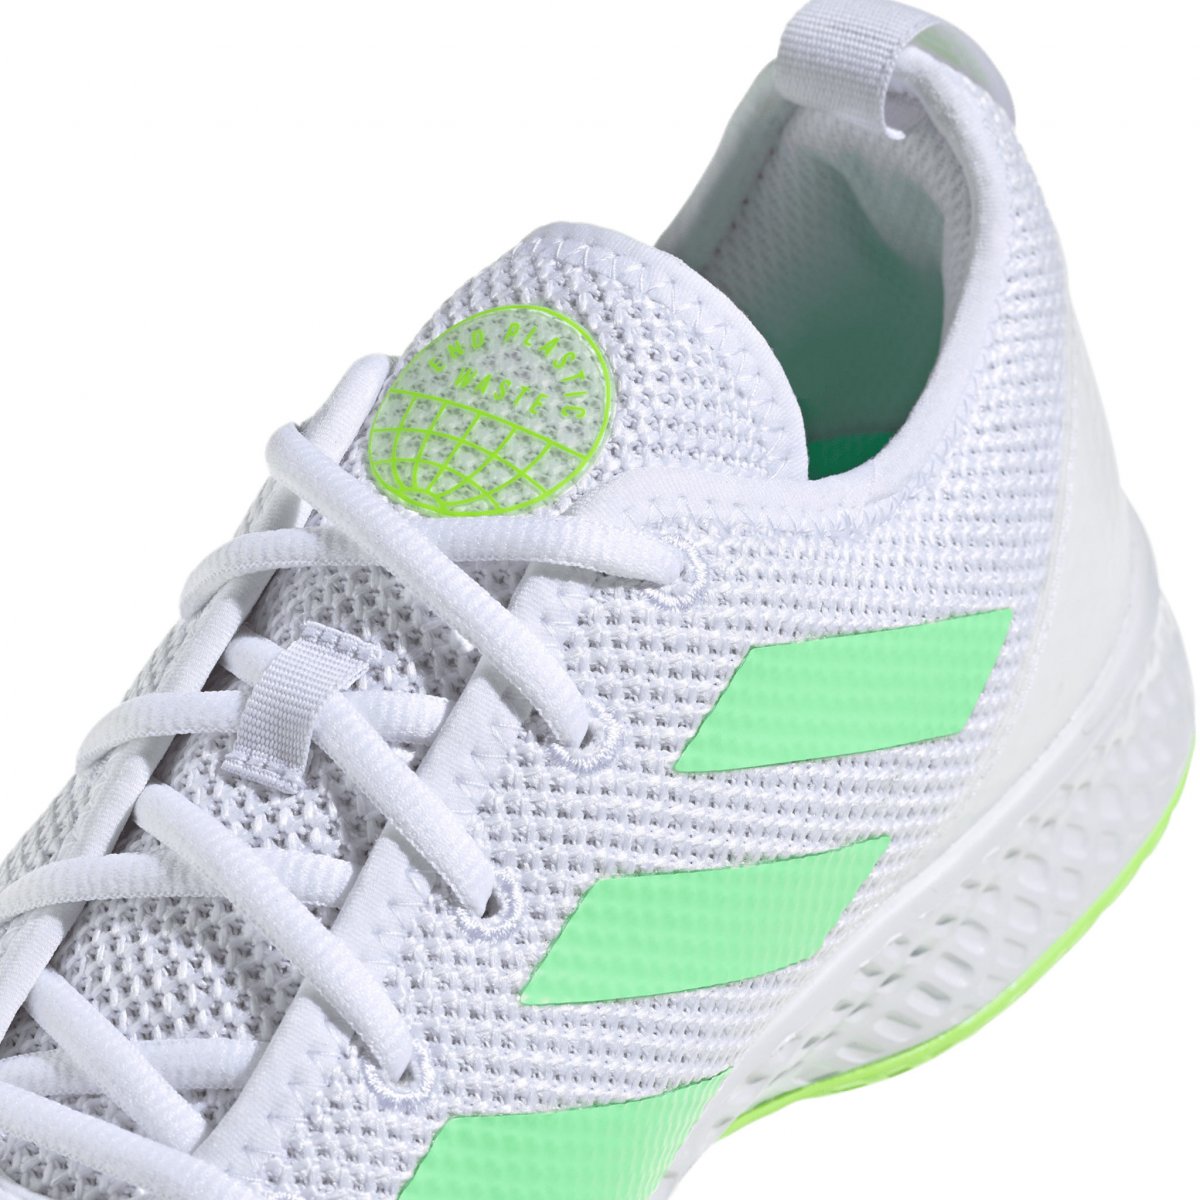 Tenis Adidas CourtFlash Caballero White/Green